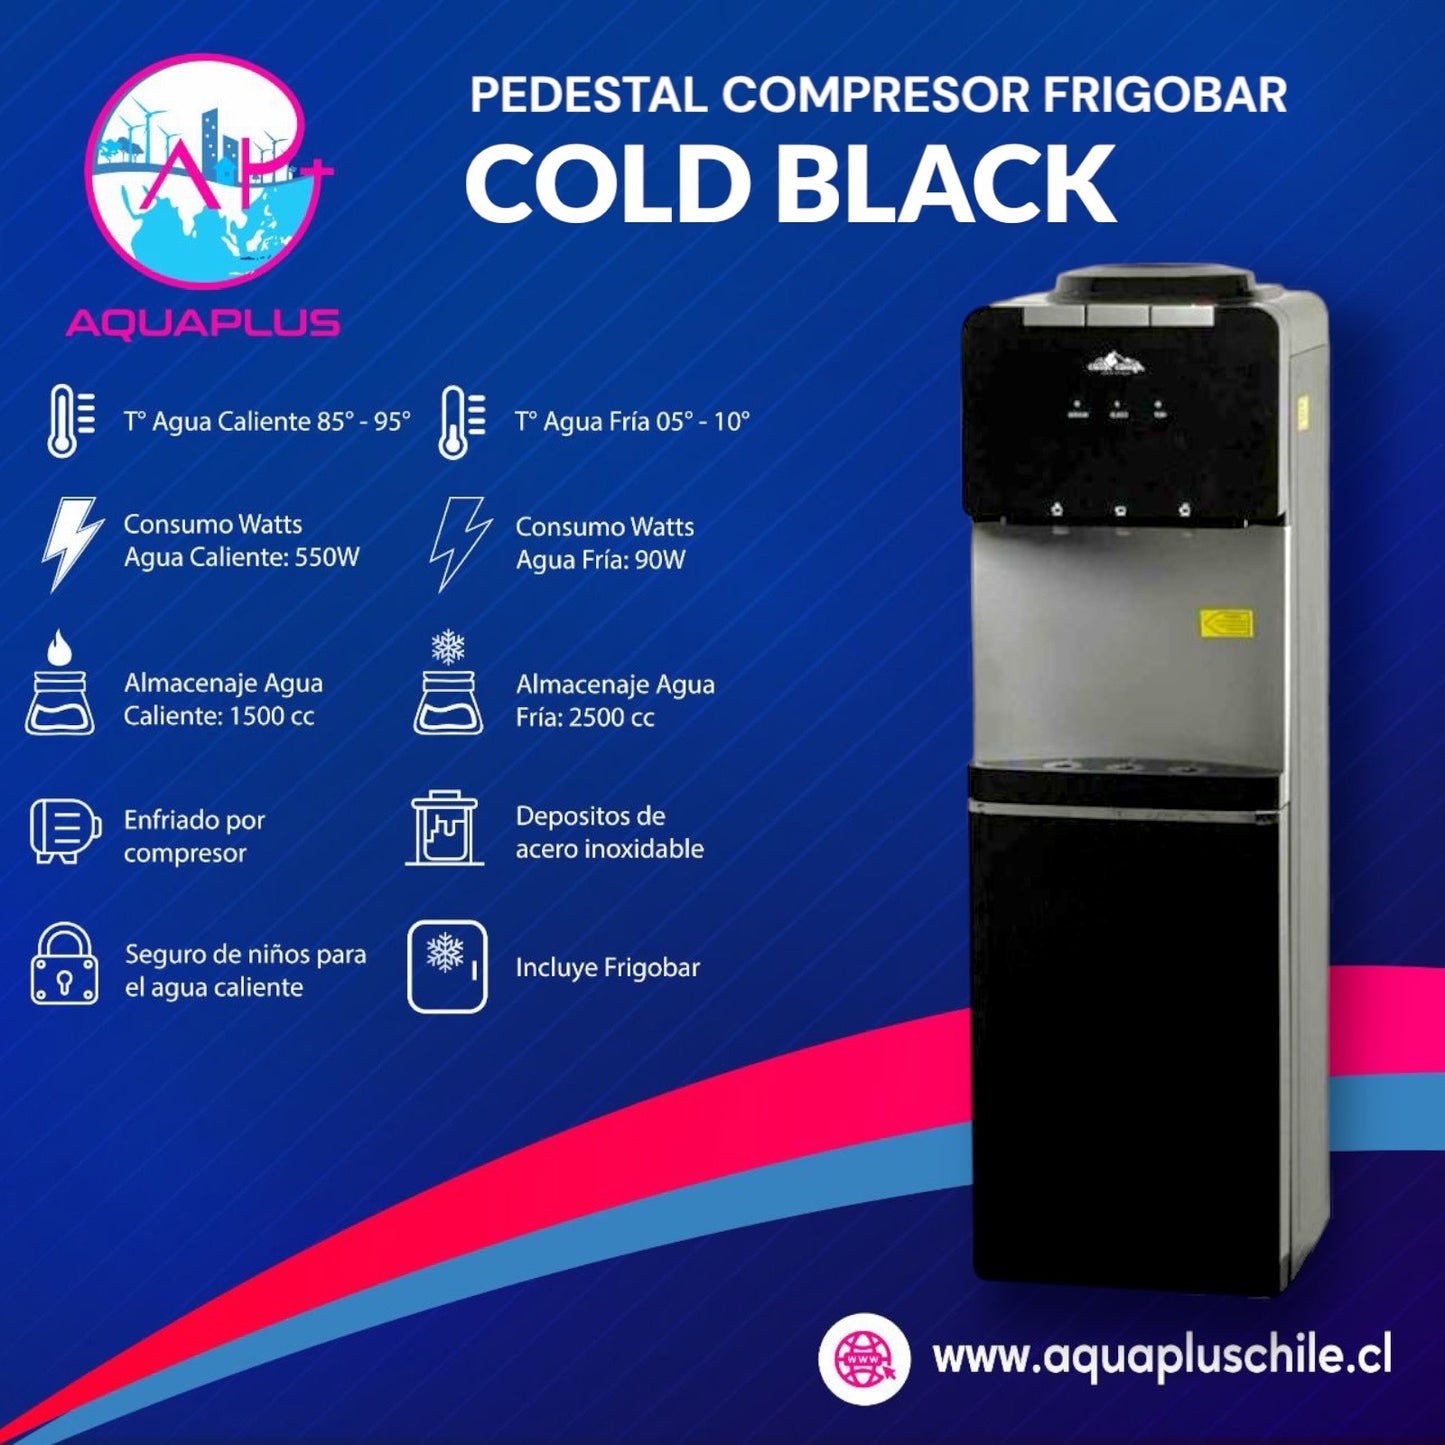 PEDESTAL COLD BLACK CON FRIGOBAR + 4 BIDONES (incluye envases retornable)